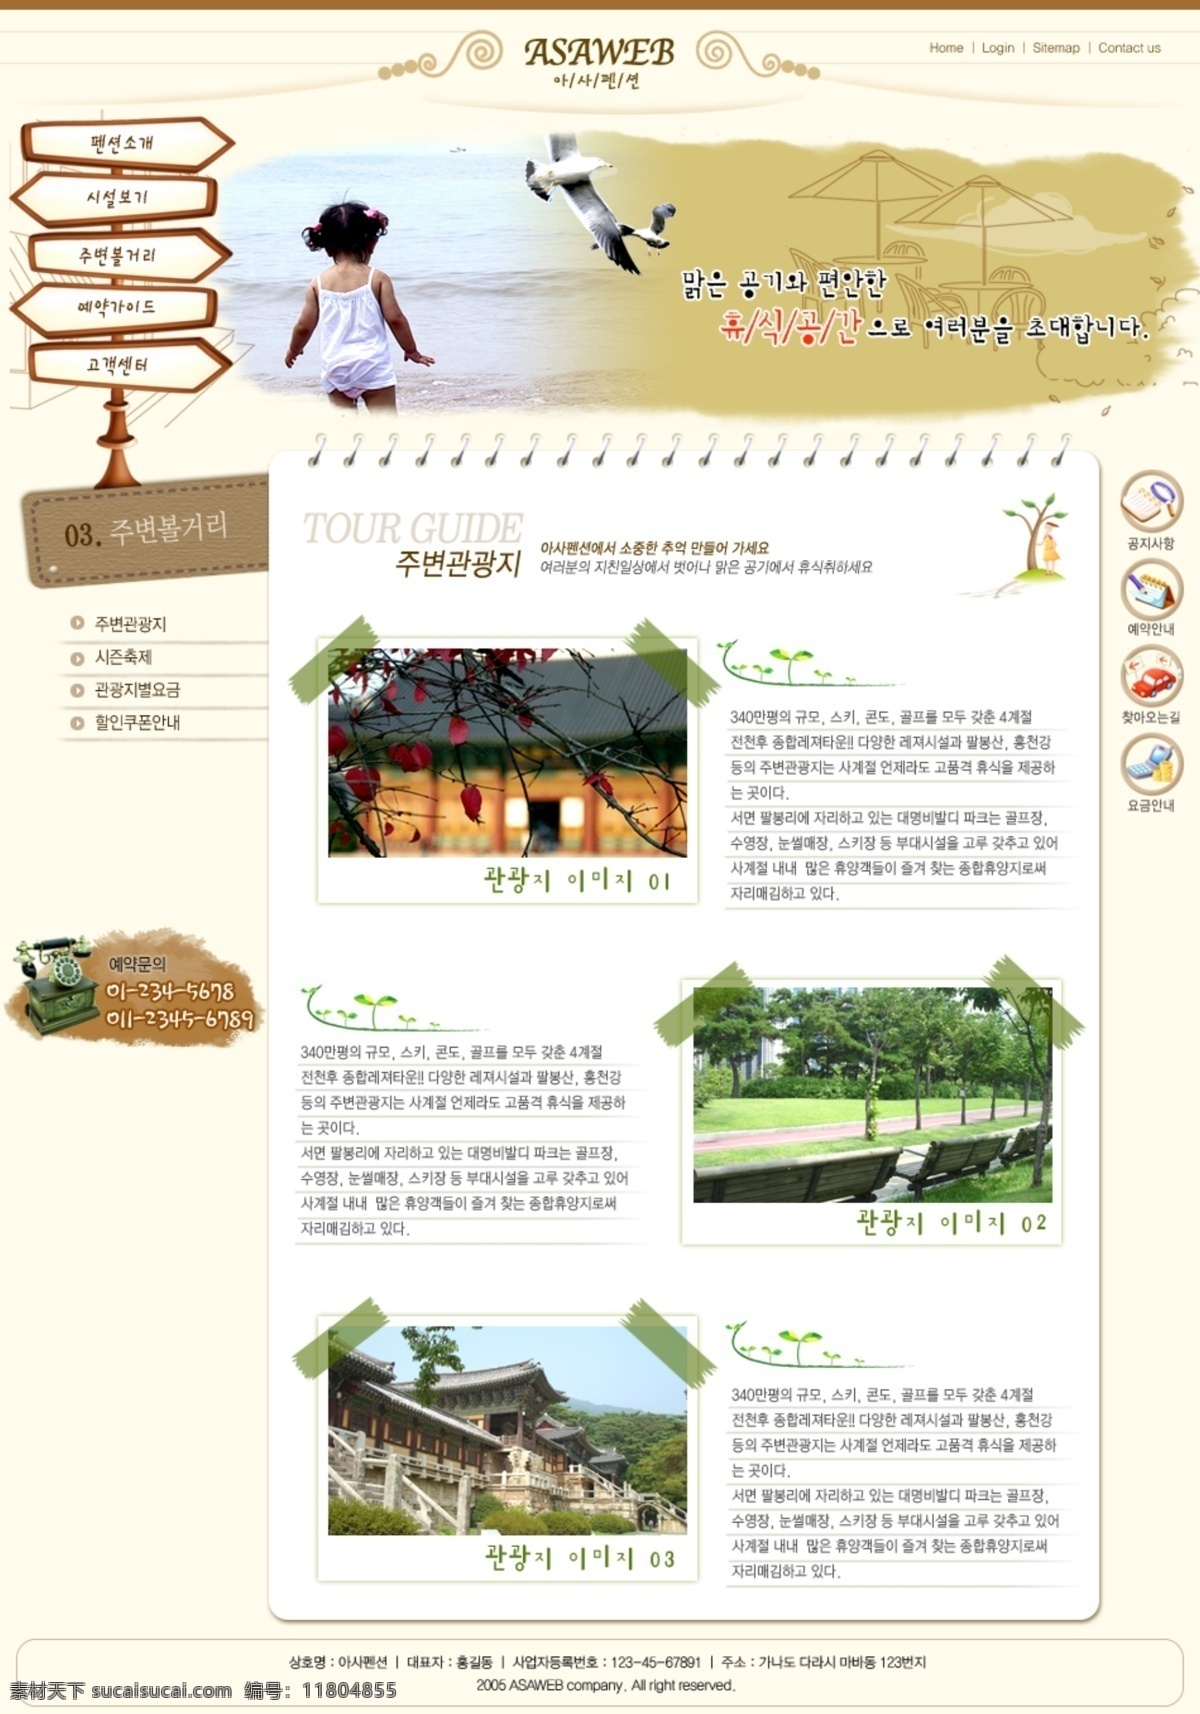 简约 时尚 网页模板 韩国模板 简单 清爽 网页模版 源文件库 网页素材